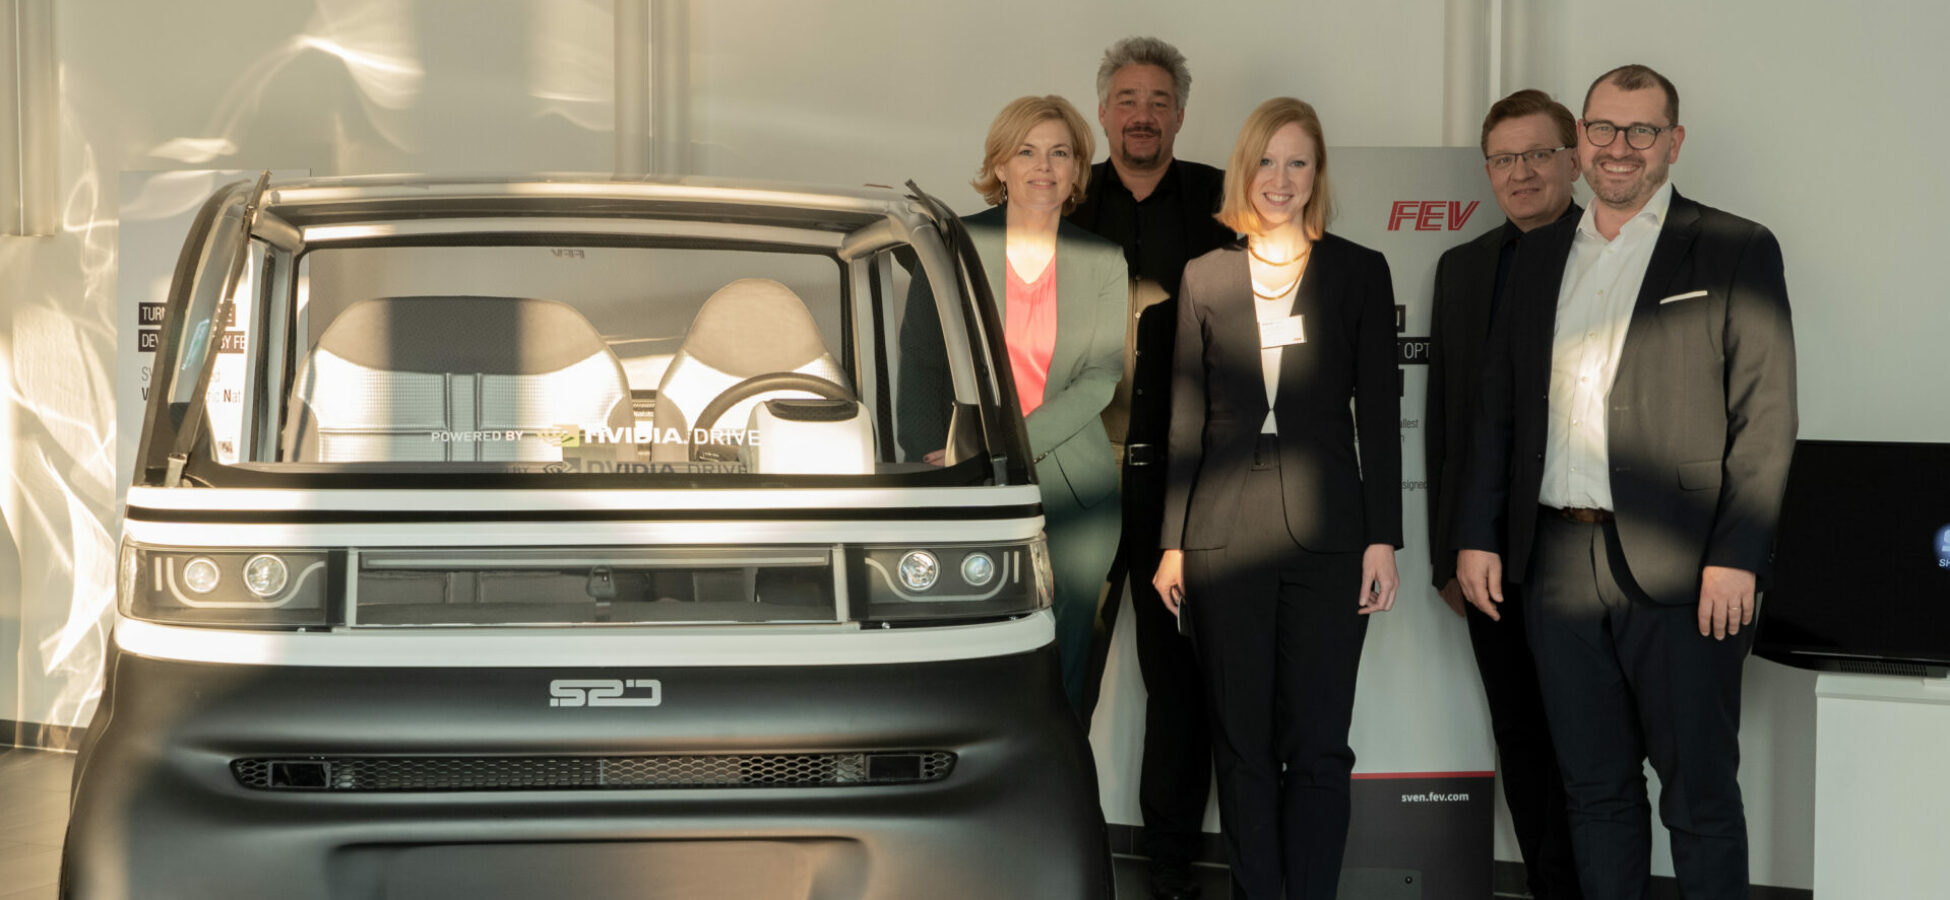 Gruppenfoto bei der FEV Group mit Annika Fohn und Julia Klöckner vor dem Fahrzeug SVEN